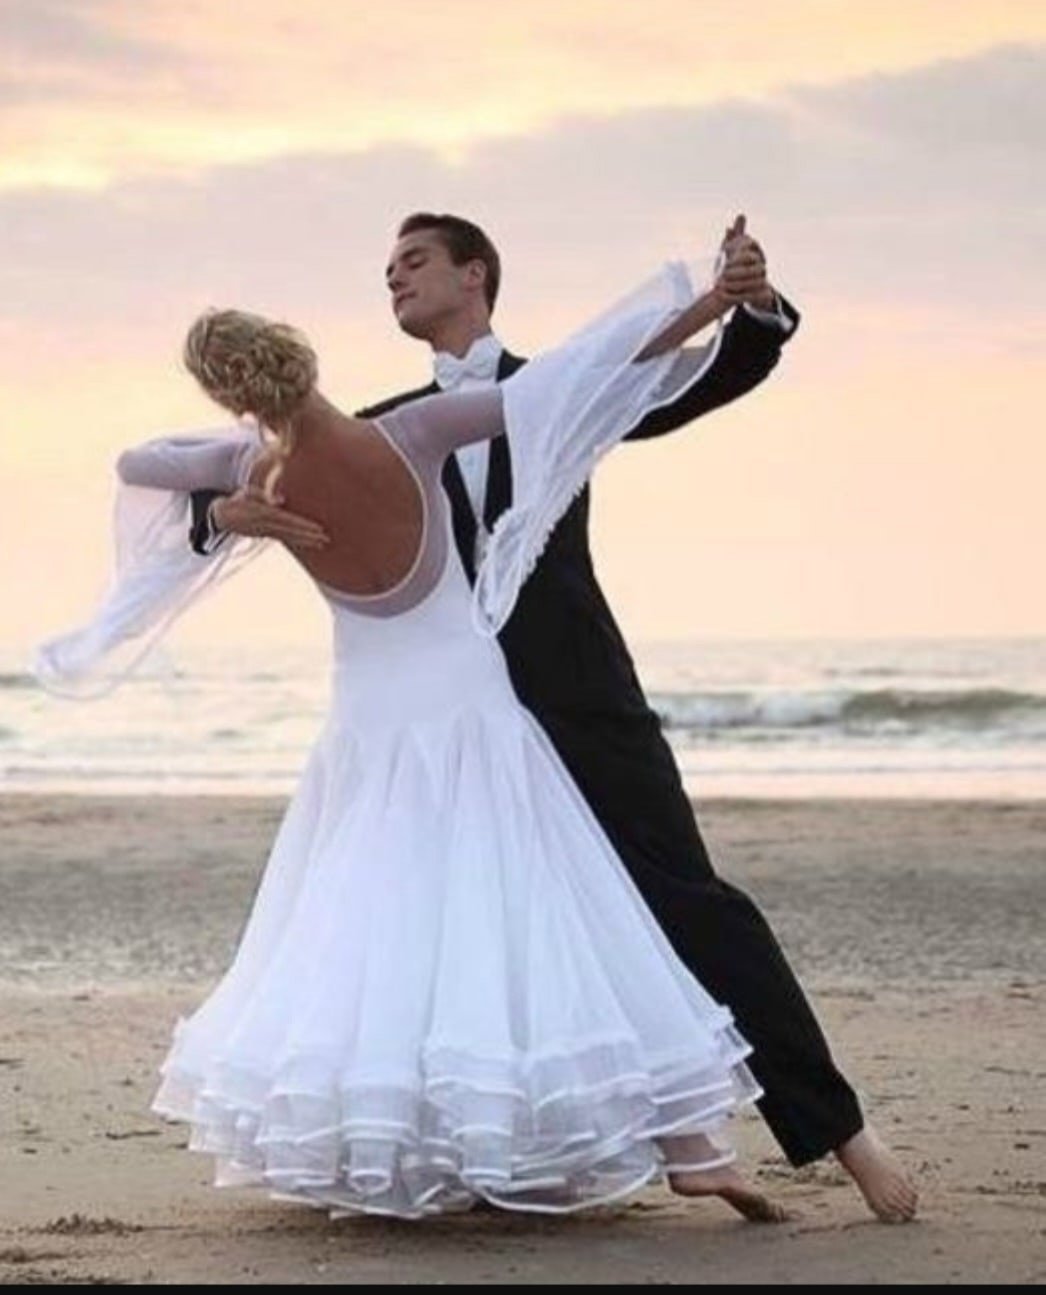 Другой белый танец. Свадебный танец. Вальс танец. Танцевальное свадебное платье. Бальный танец в белом.